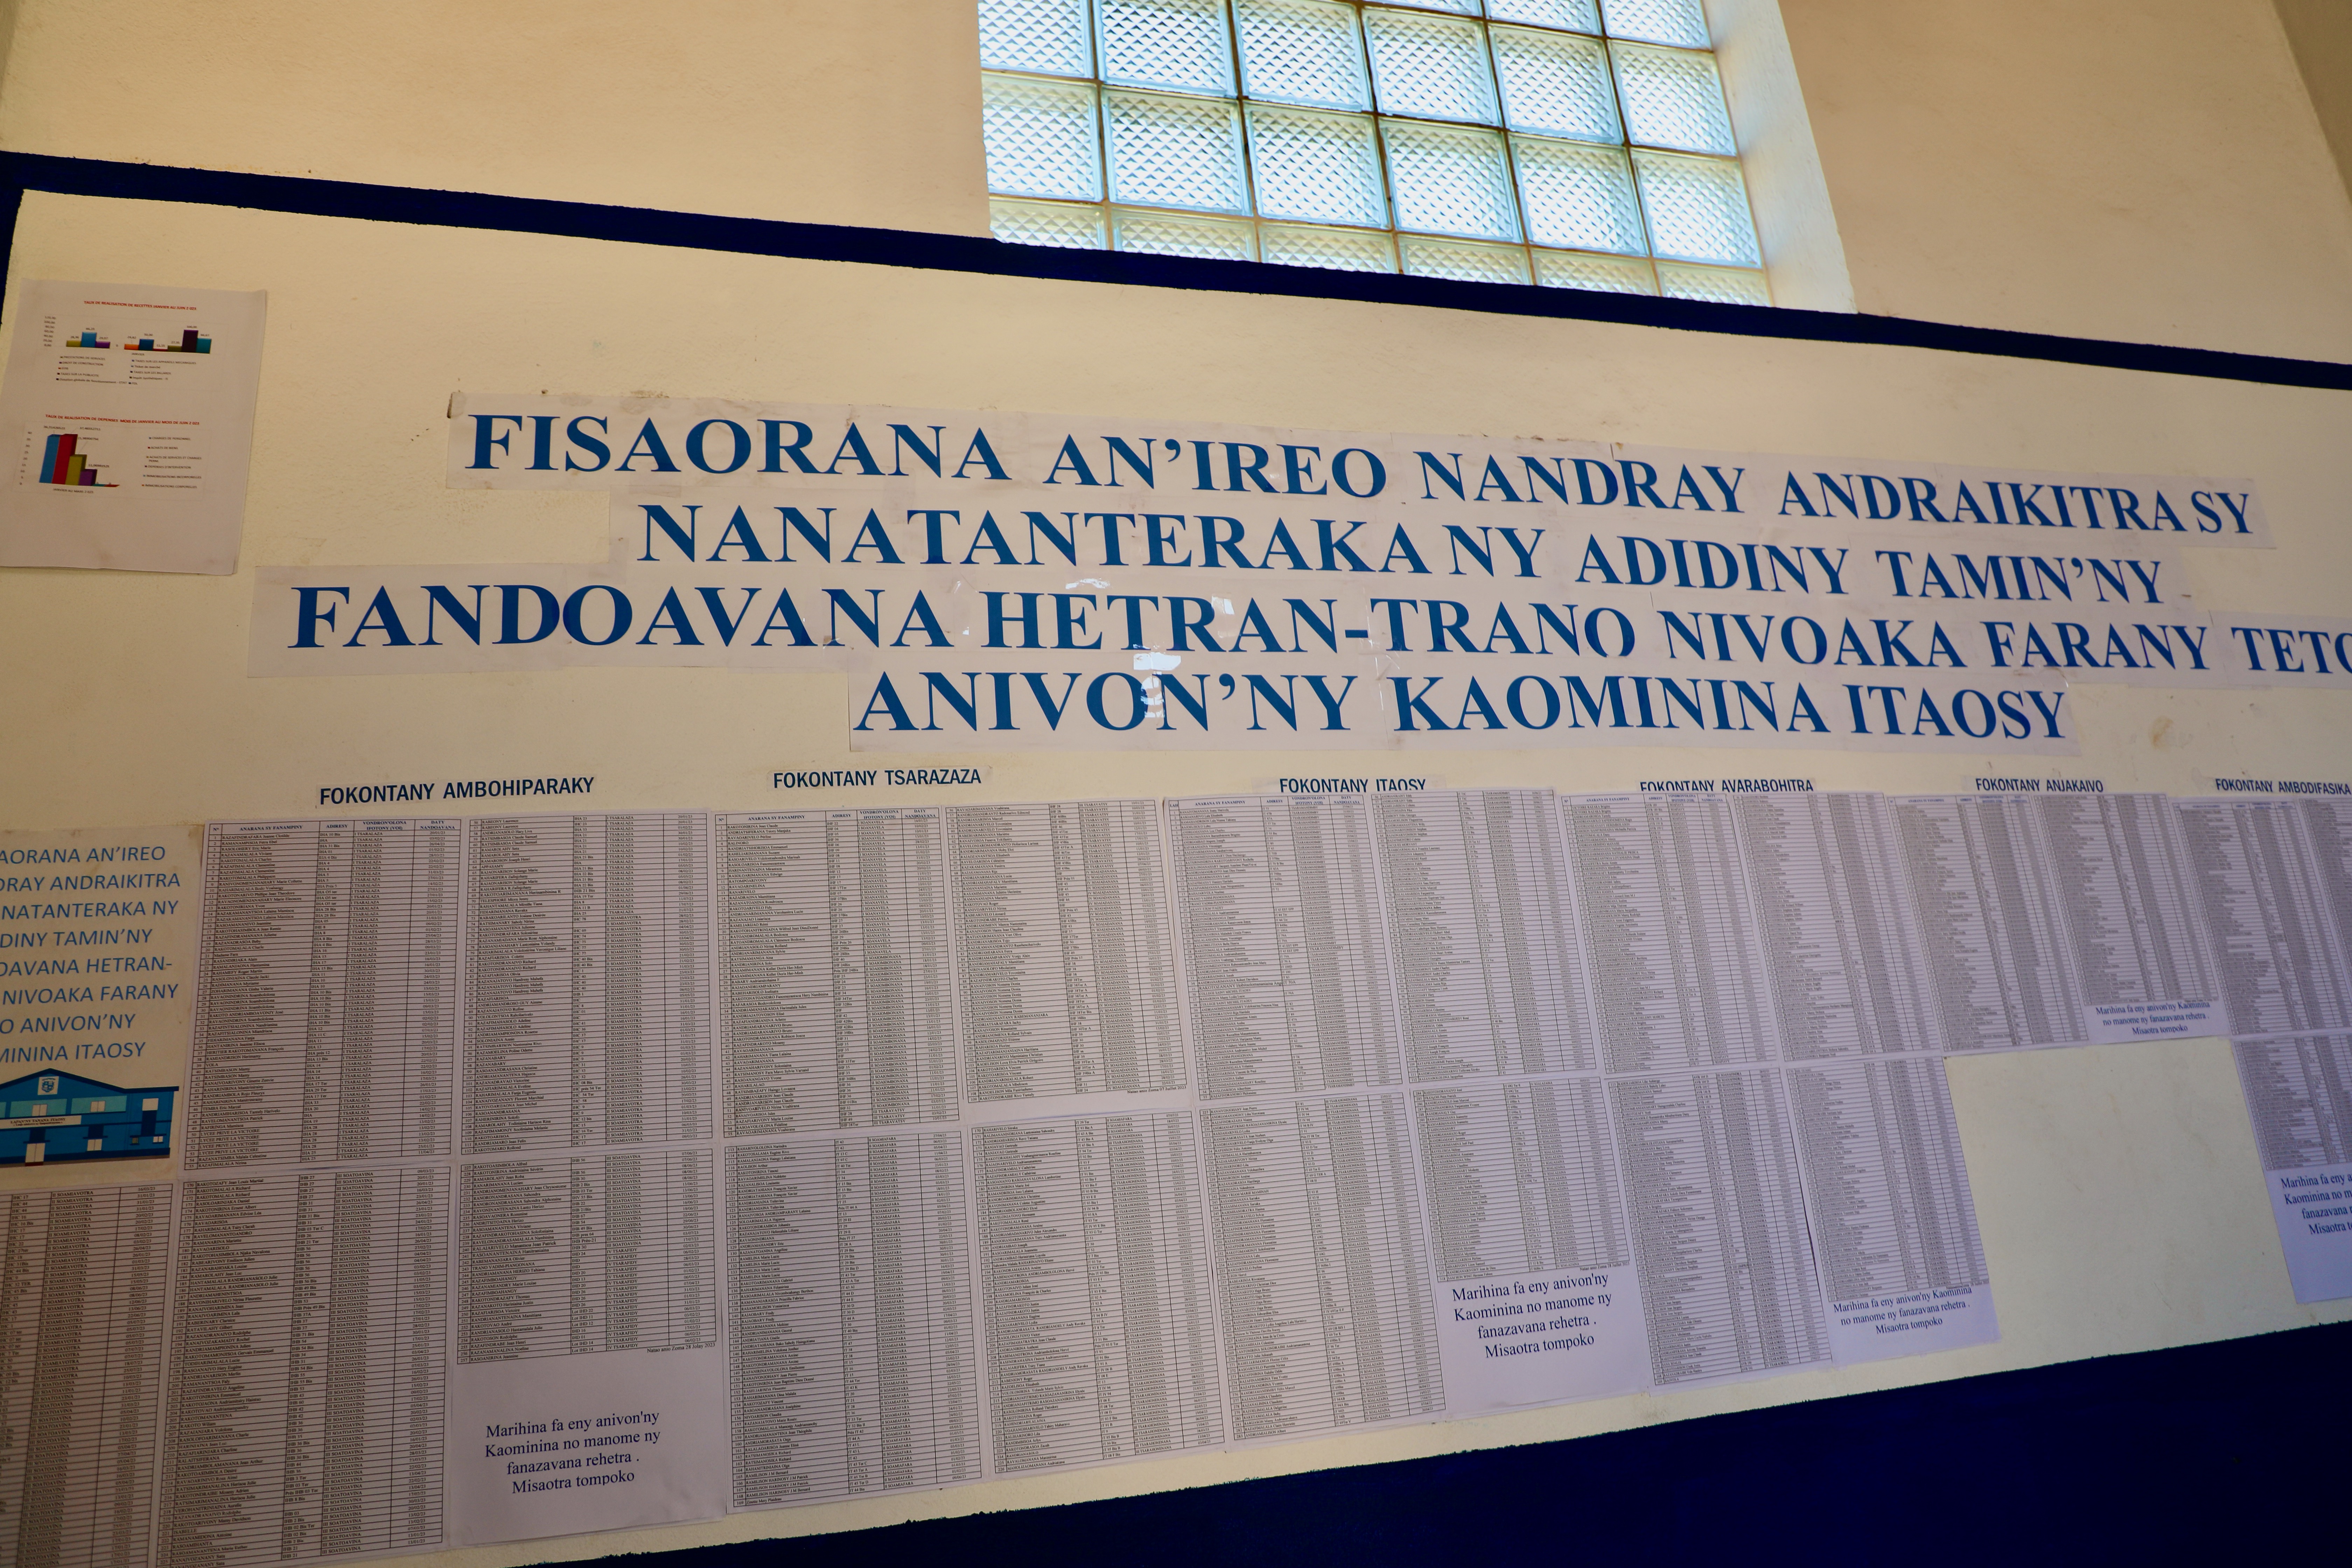 Le tableau des noms des contribuables de la Commune rurale d'Itaosy appuyée par le programme Rindra